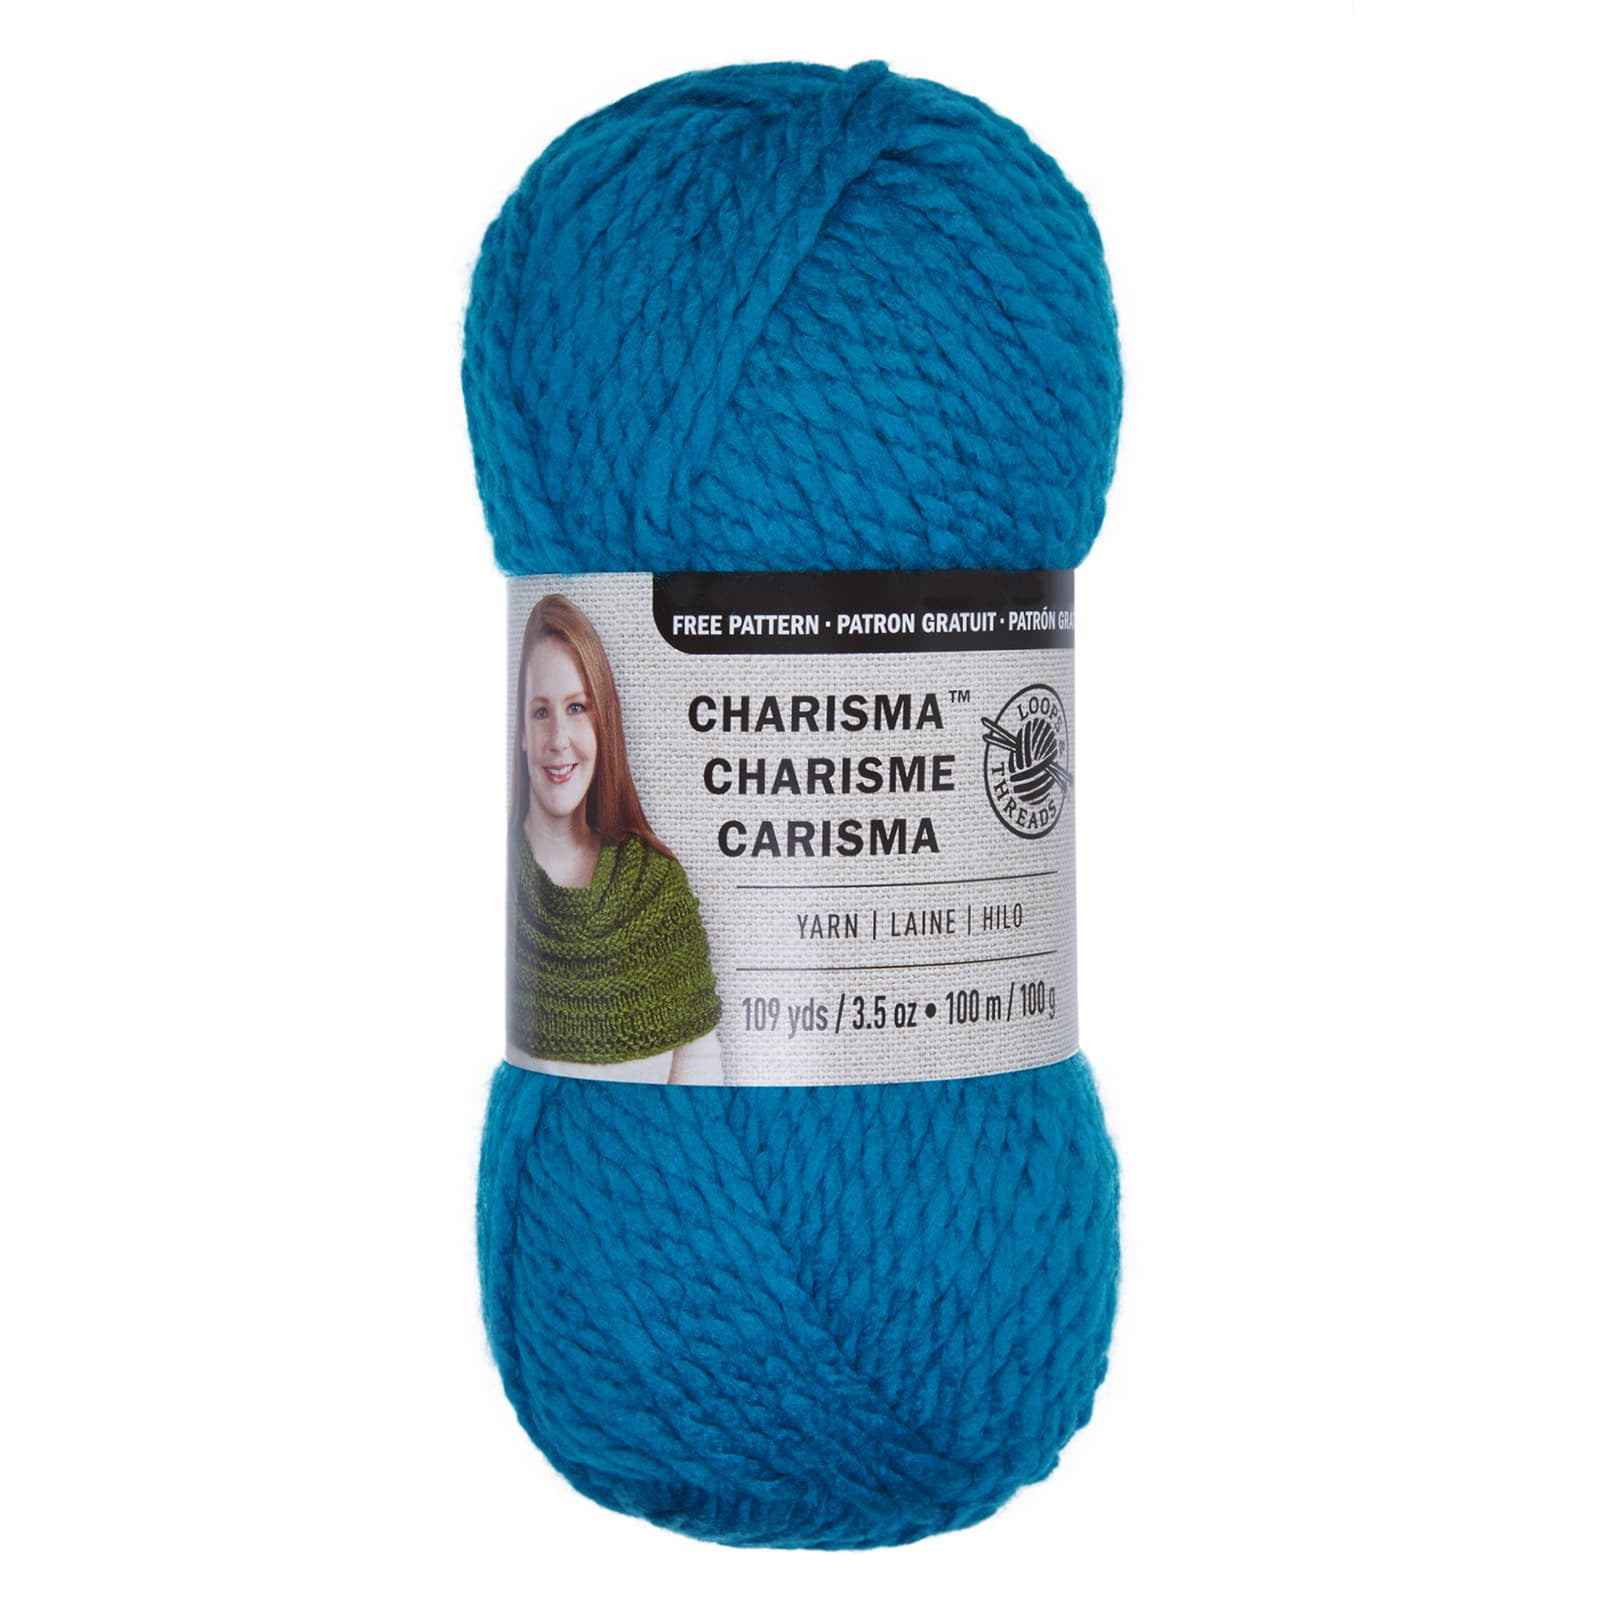 Loops & Threads Charisma Yarn - Mulberry Bush - 3.5 oz - One Ball